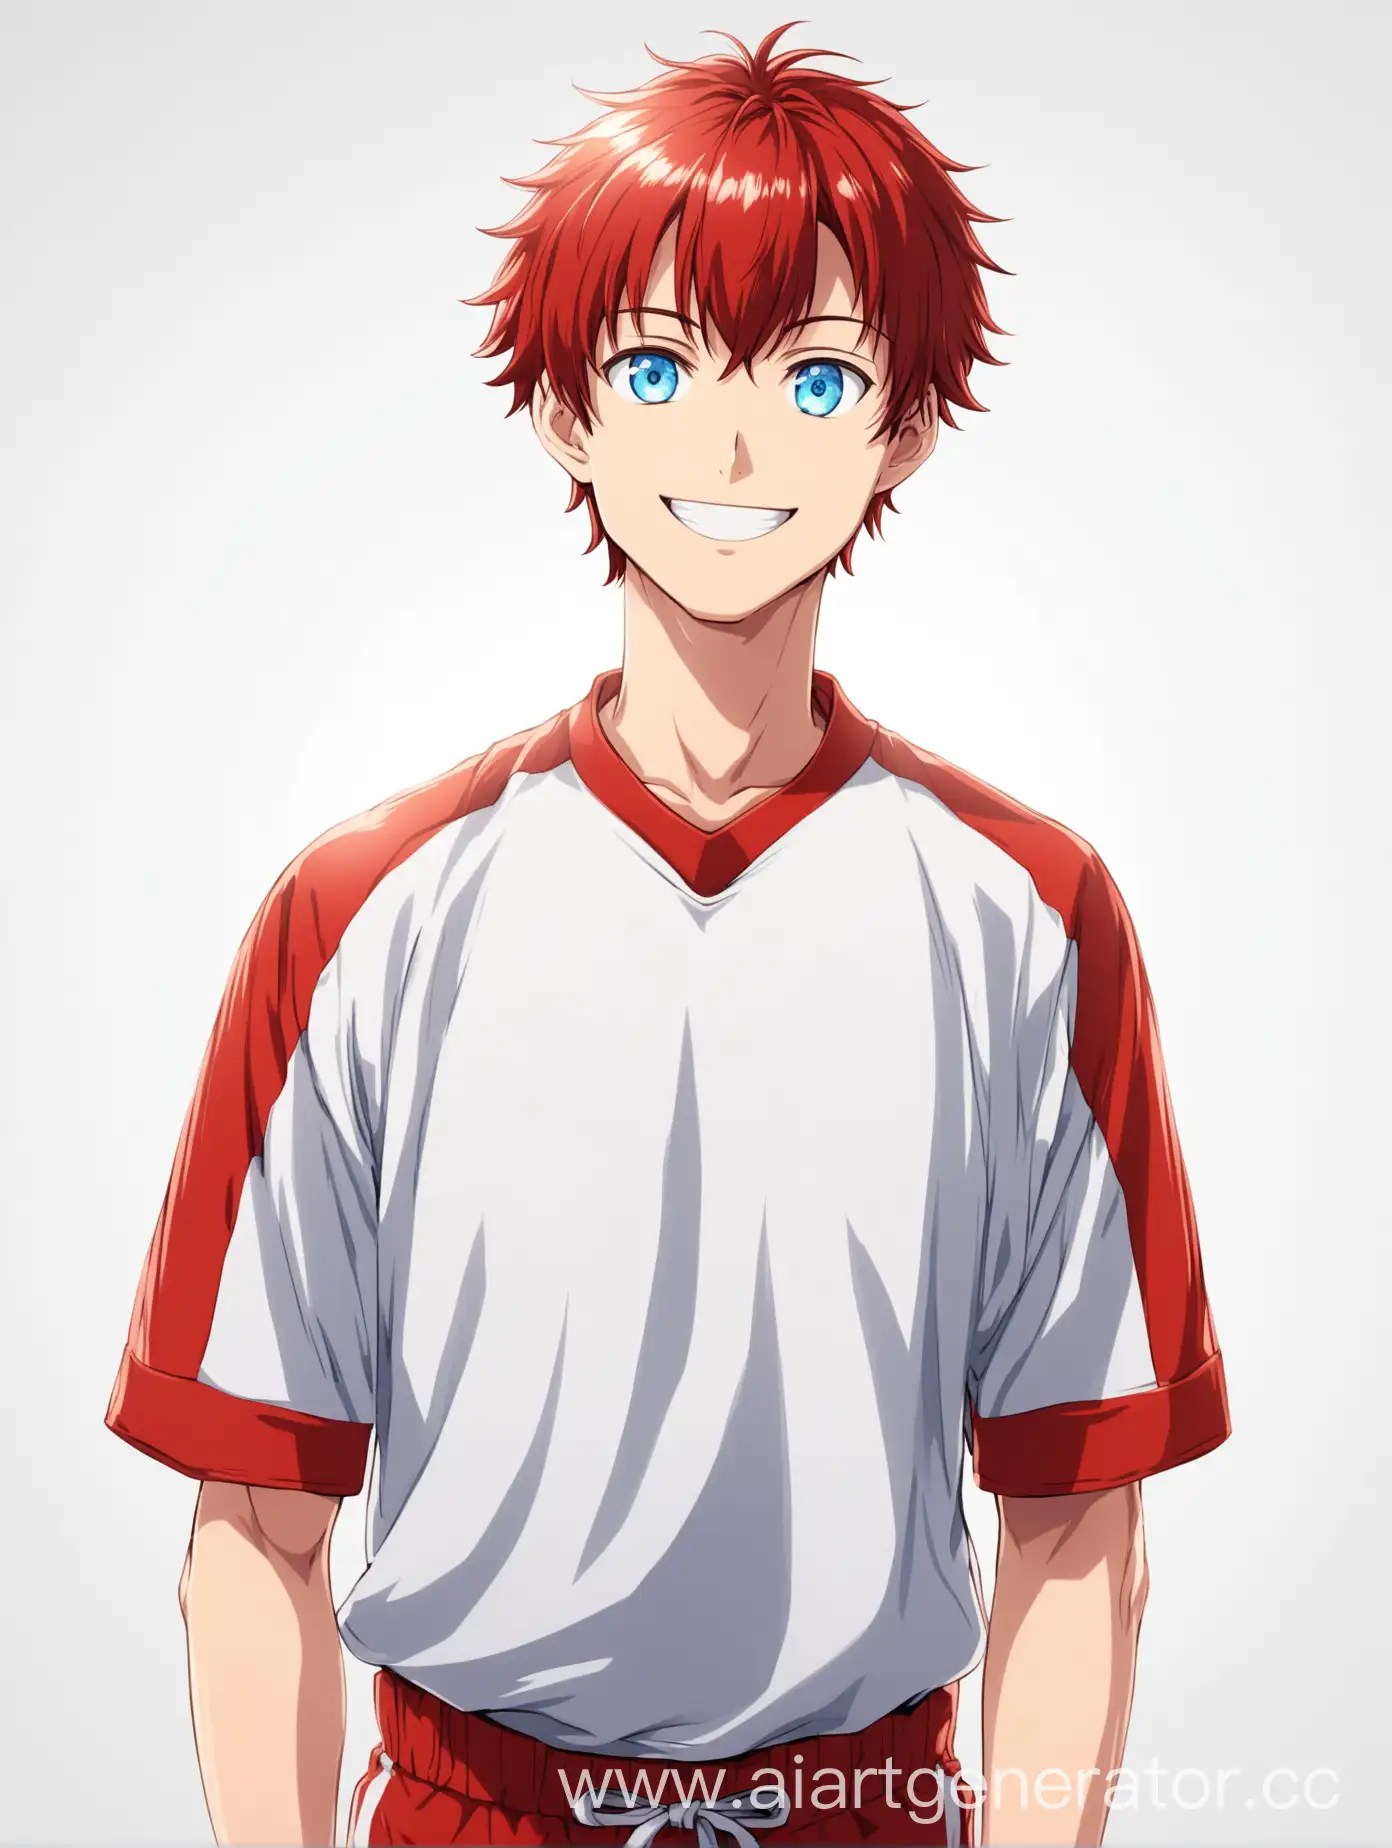 Аниме парень в красной спортивной форме, с голубыми глазами и светлыми короткими волосами улыбается. Изолированный объект на белом фоне, фото по пояс